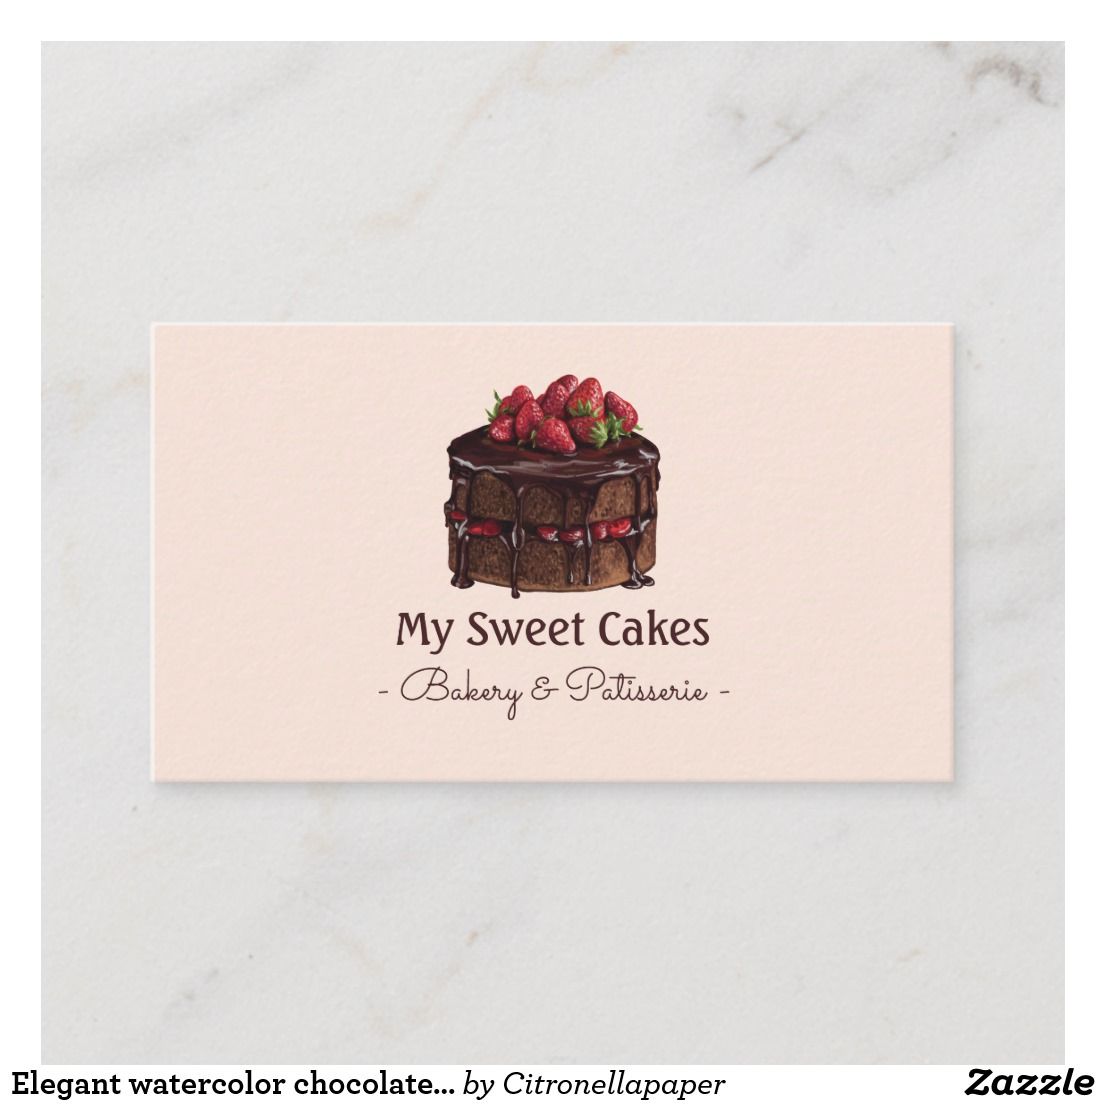 dessert business cards 3